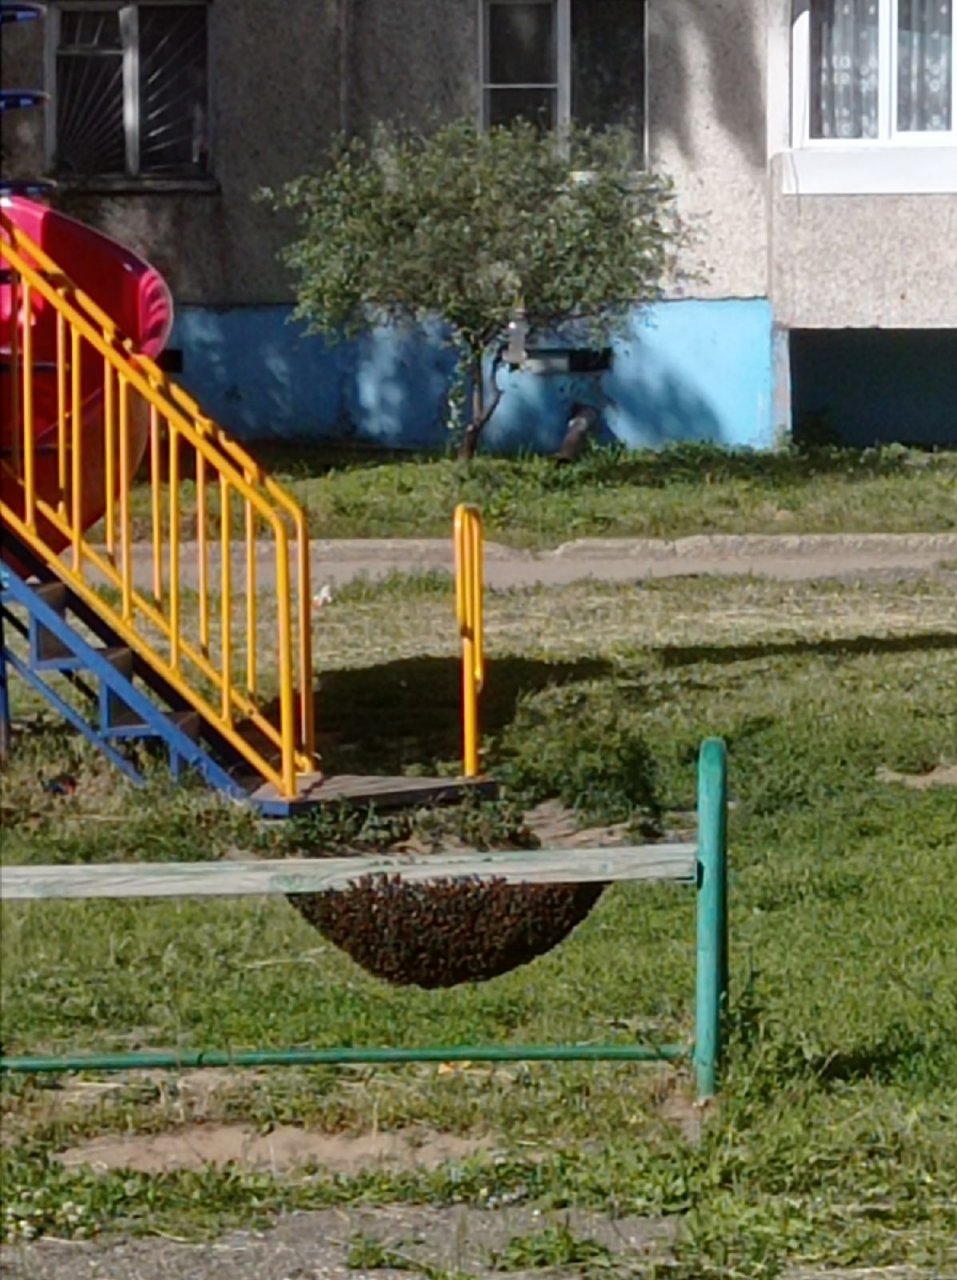 Откуда в Чебоксарах на детских площадках и в подъездах берутся бродячие пчелы